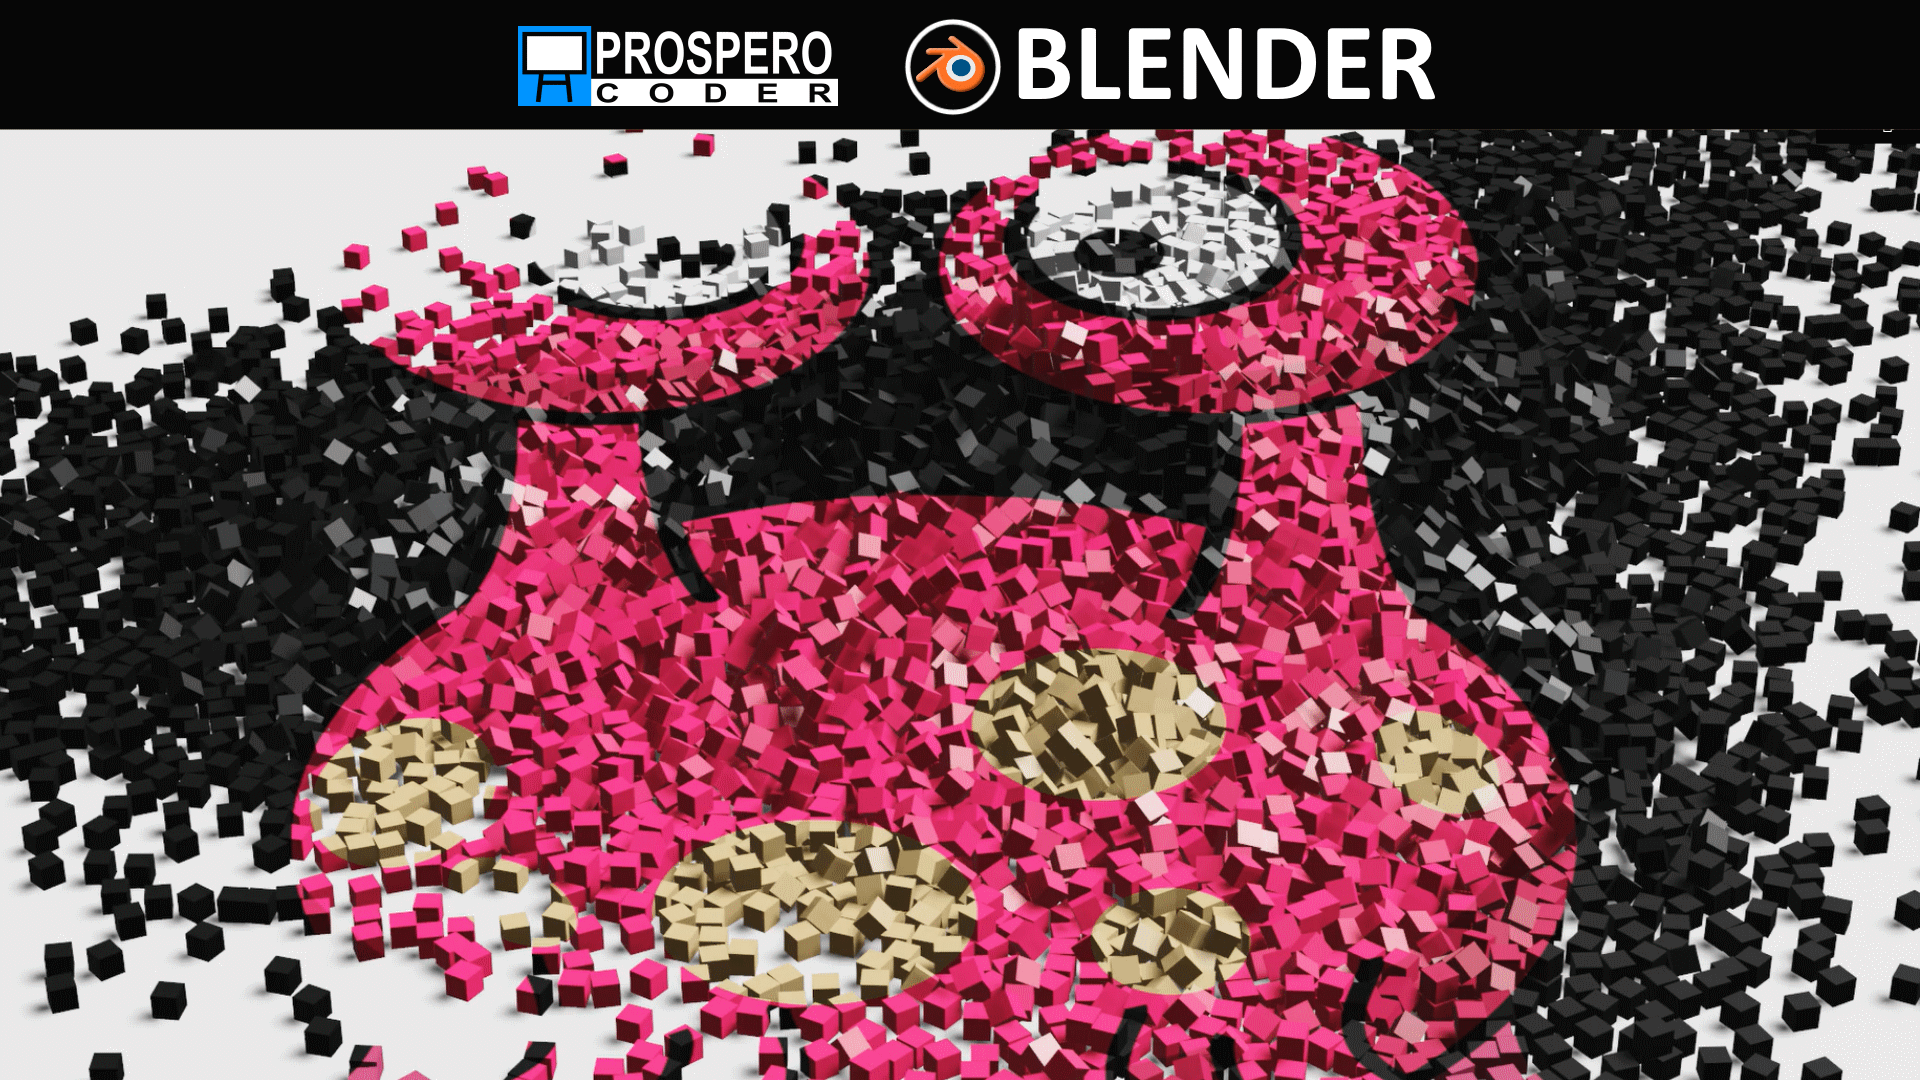 Image on Disordered in Blender - Prospero Coder